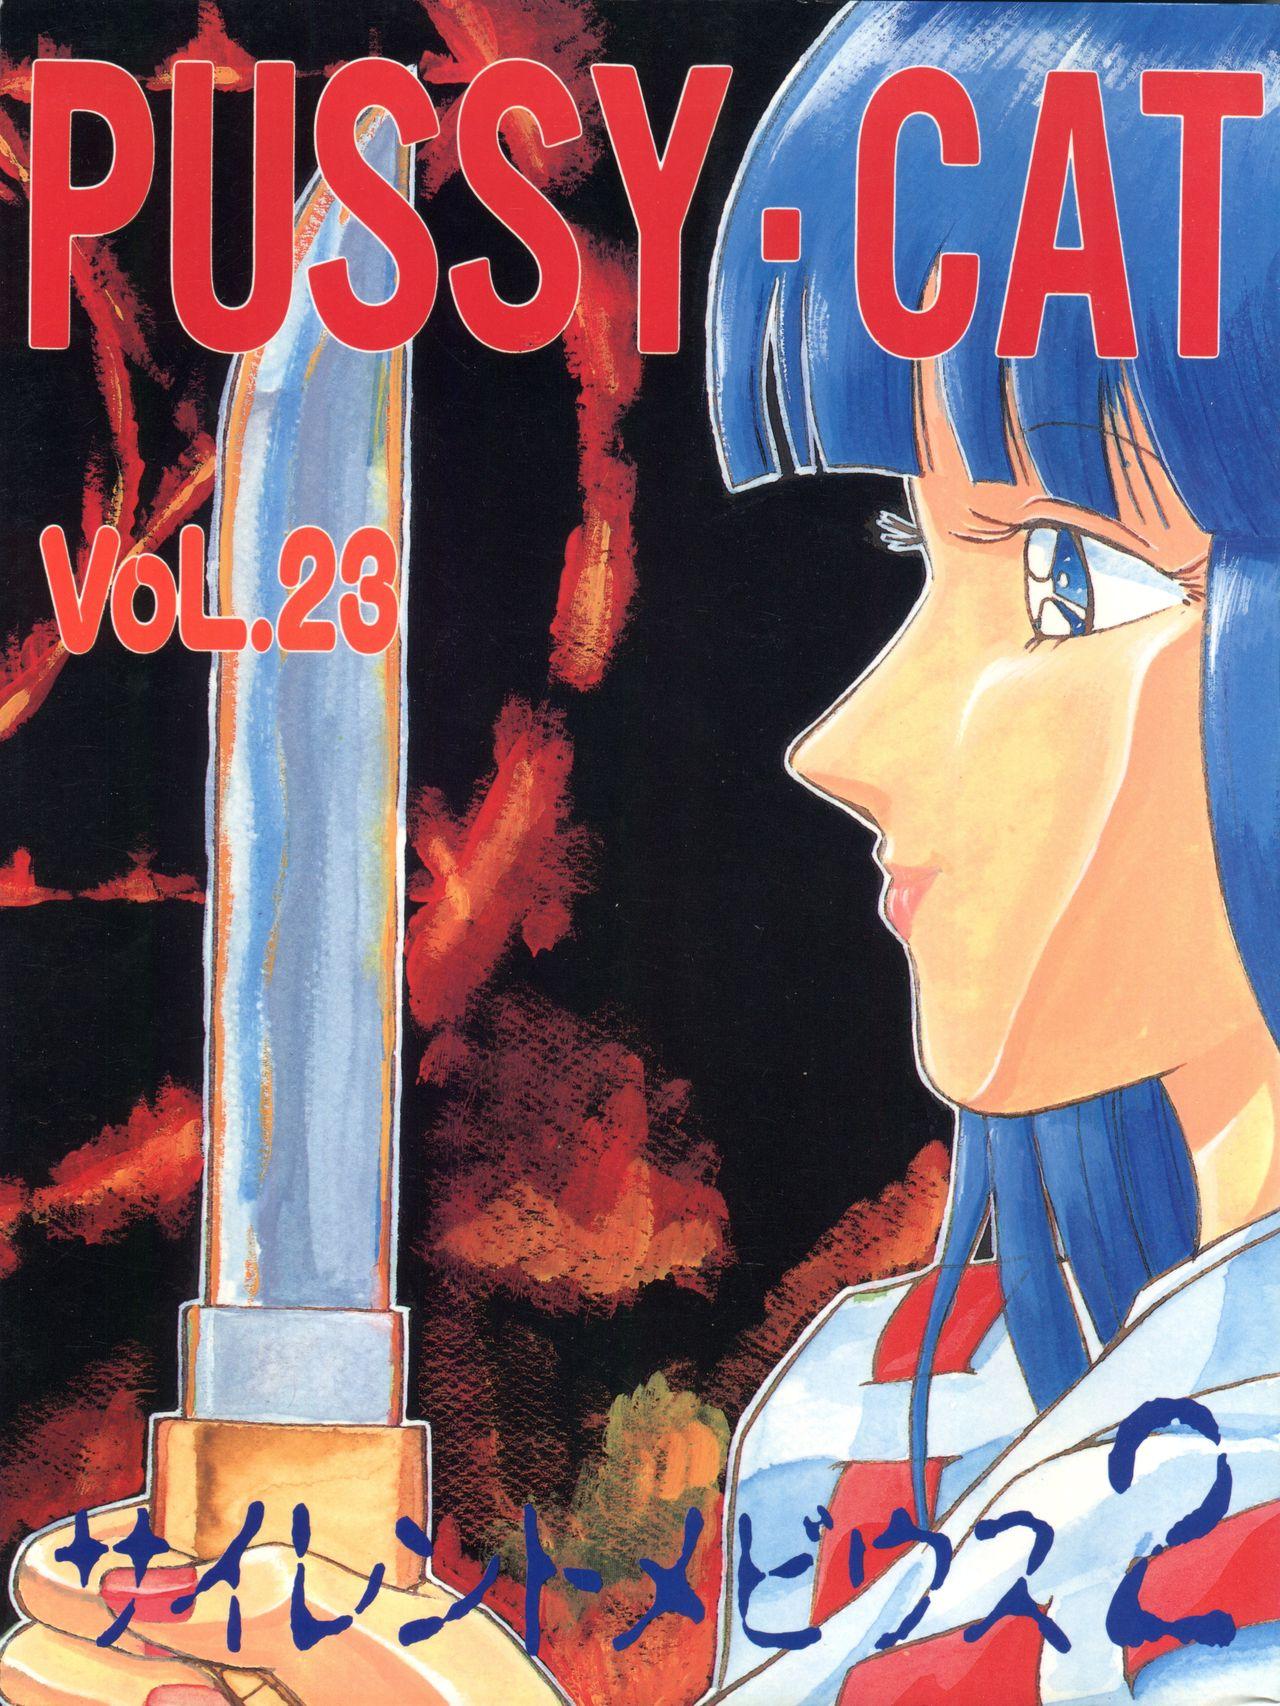 PUSSY CAT Vol. 23 Silent Mobius 2 0